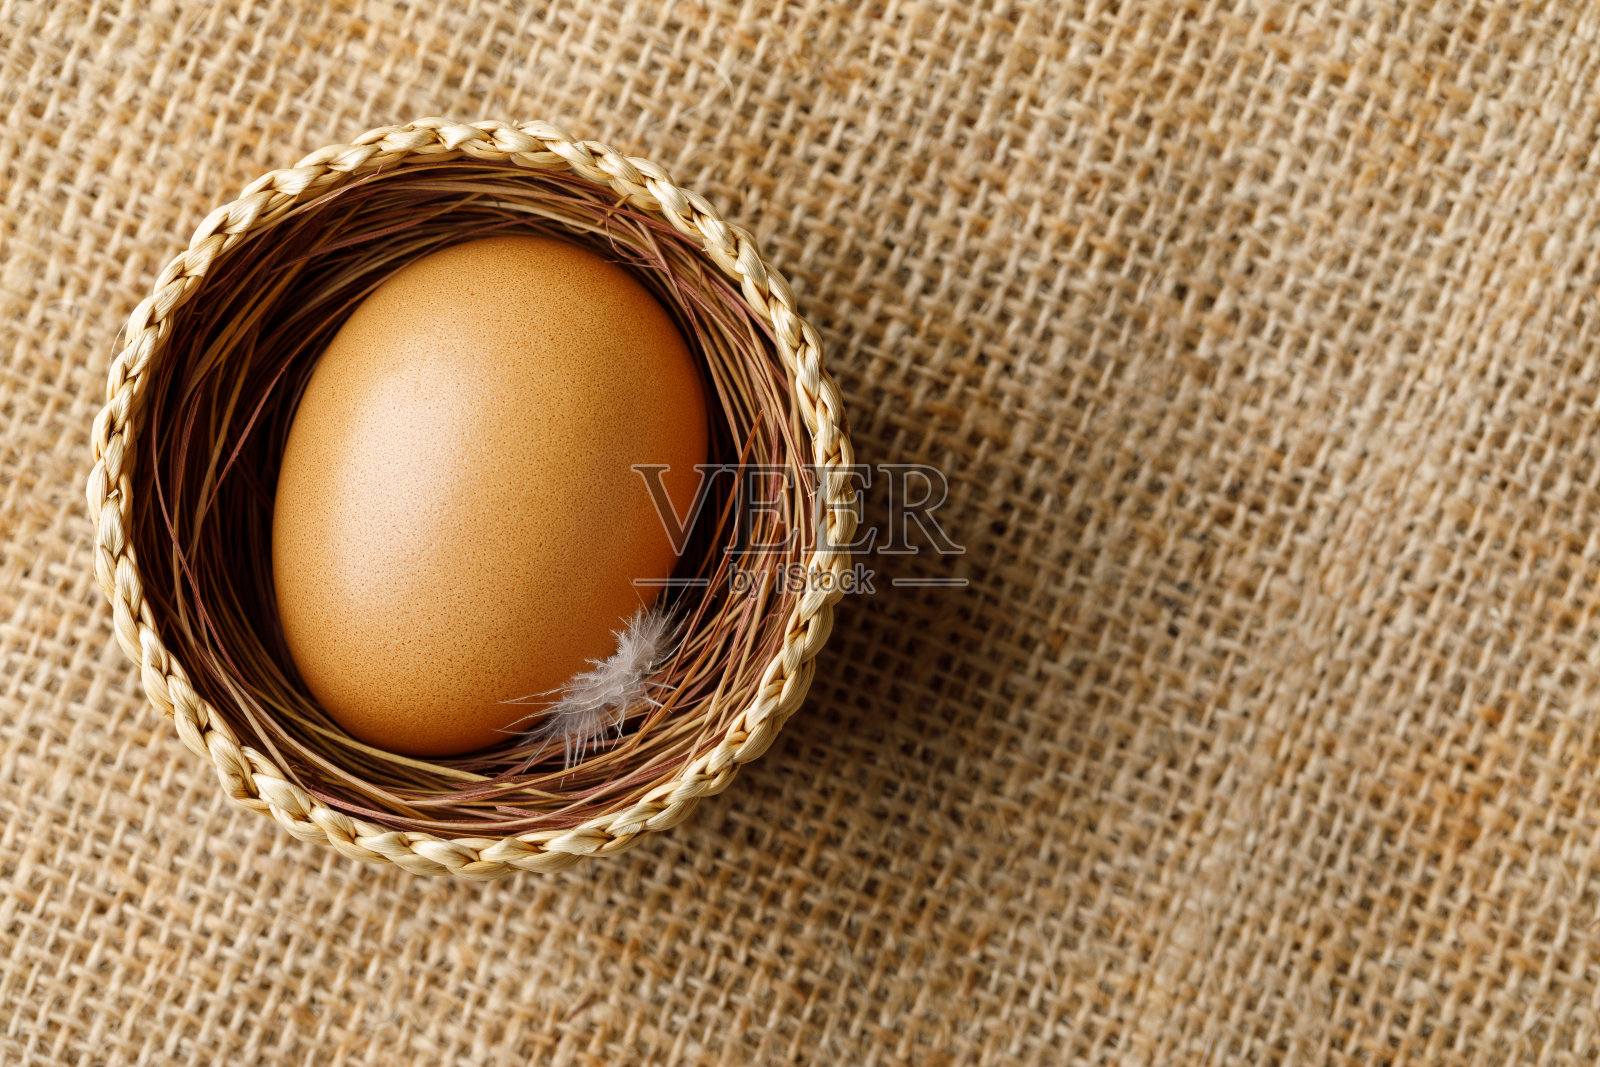 鸡或鸡蛋放在麻布柳条篮子里照片摄影图片